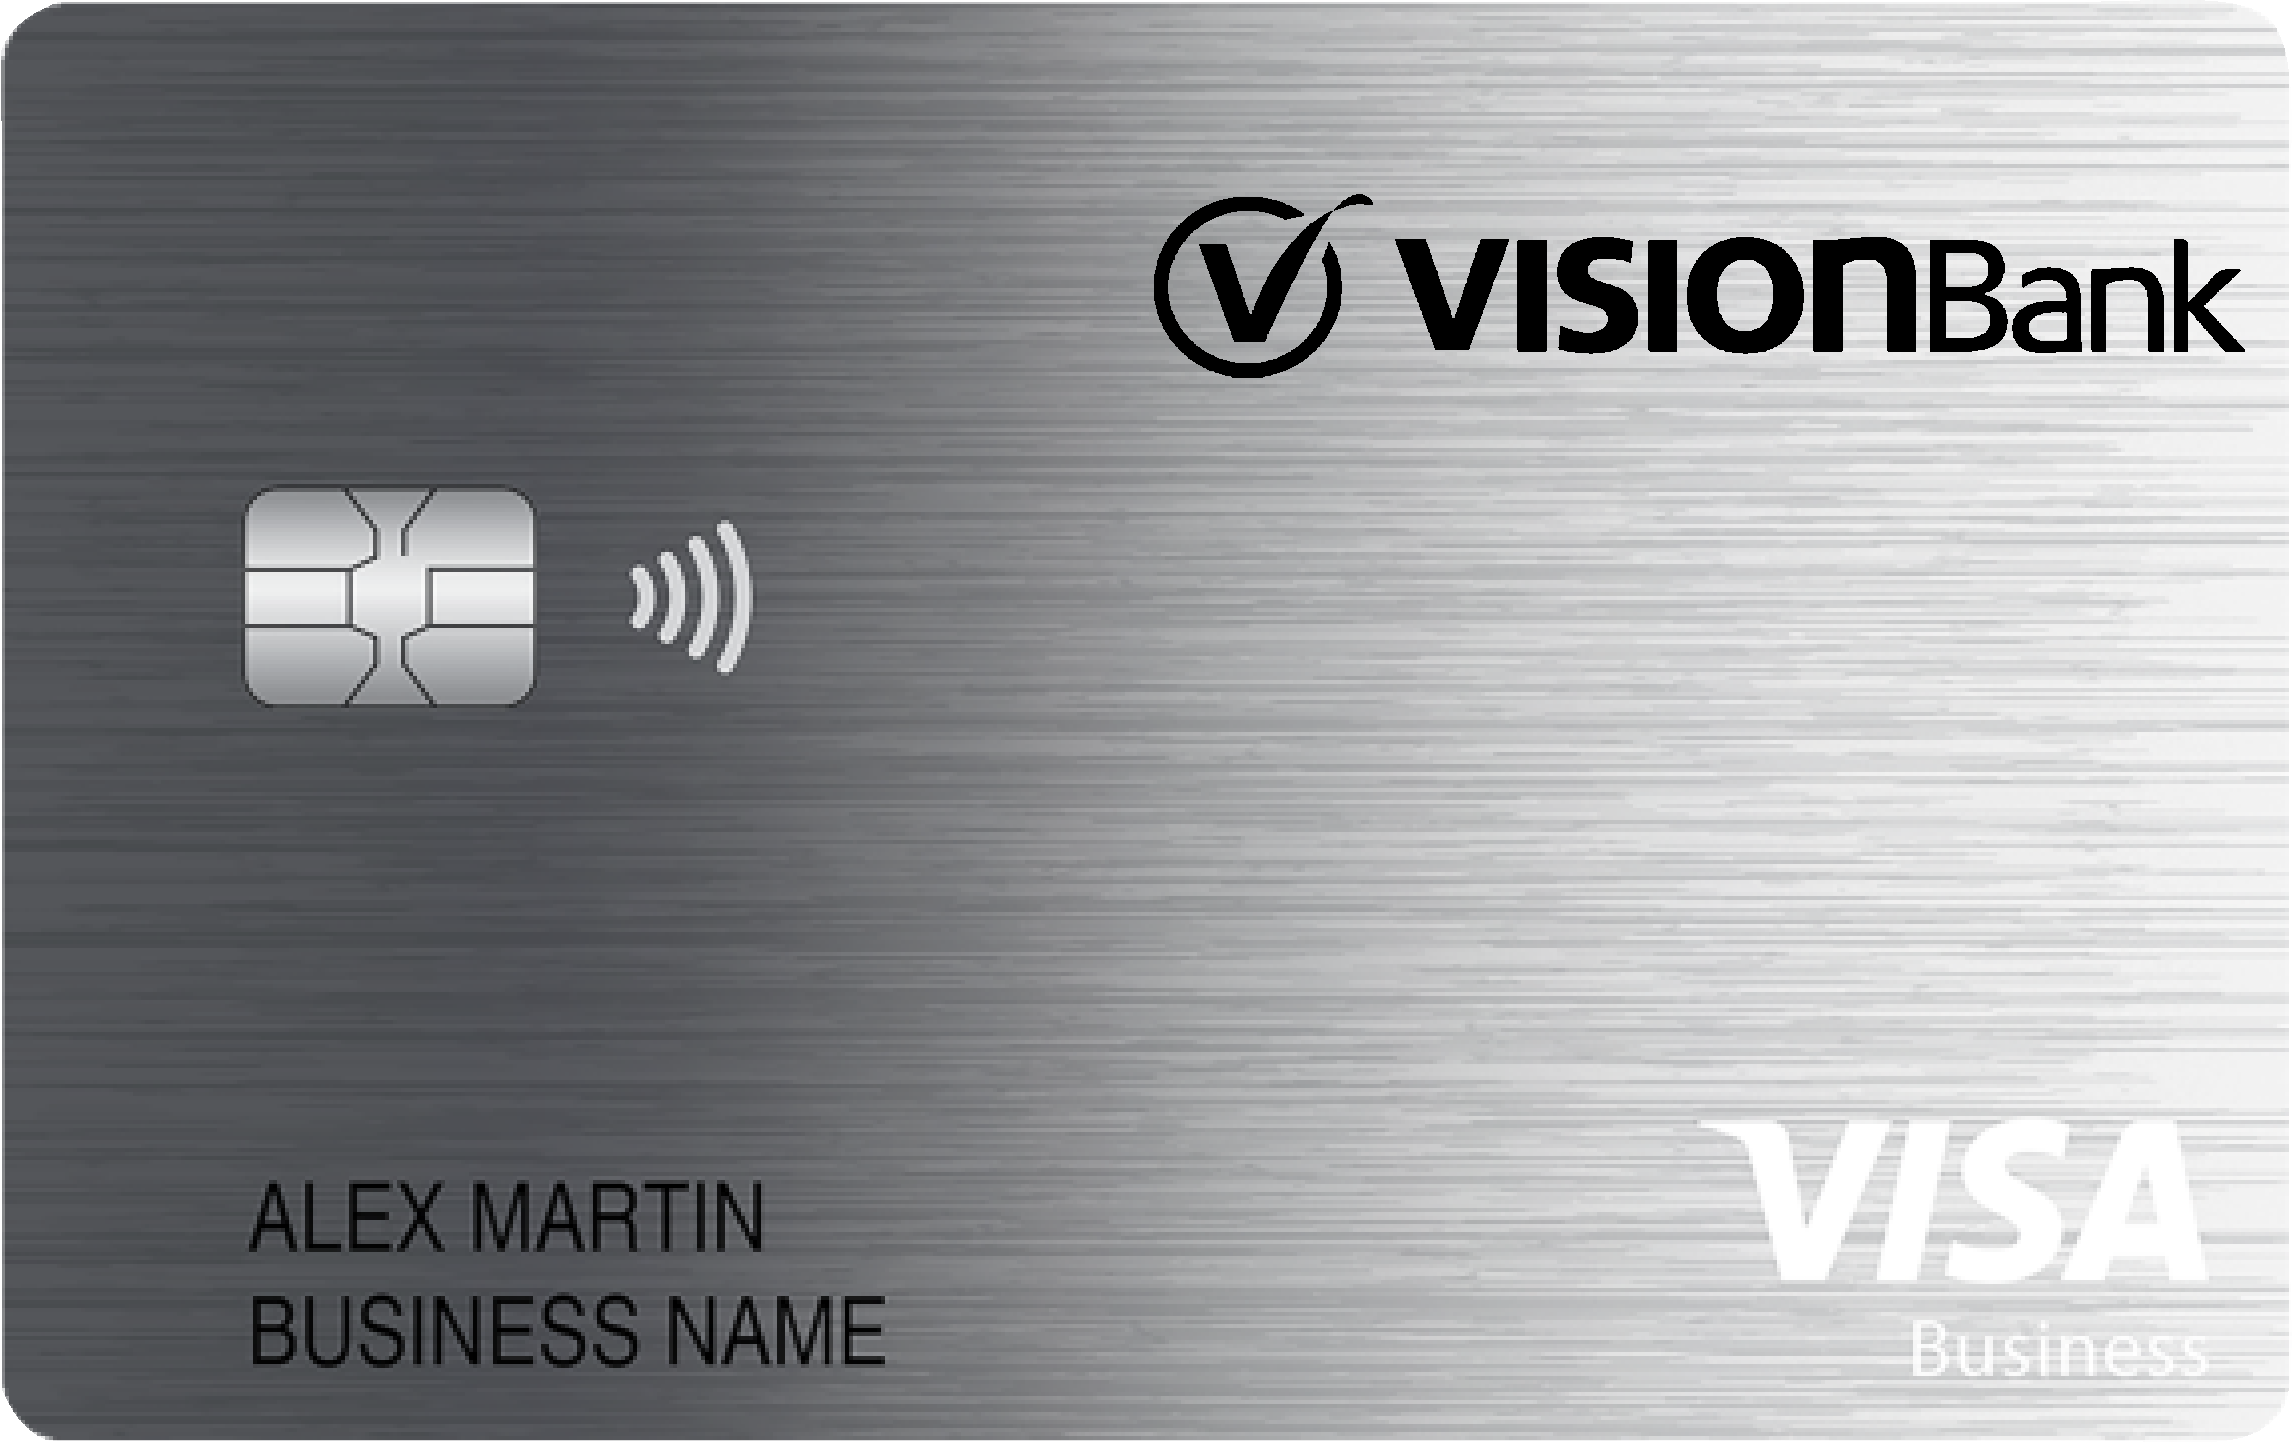 VisionBank Business Cash Preferred Card